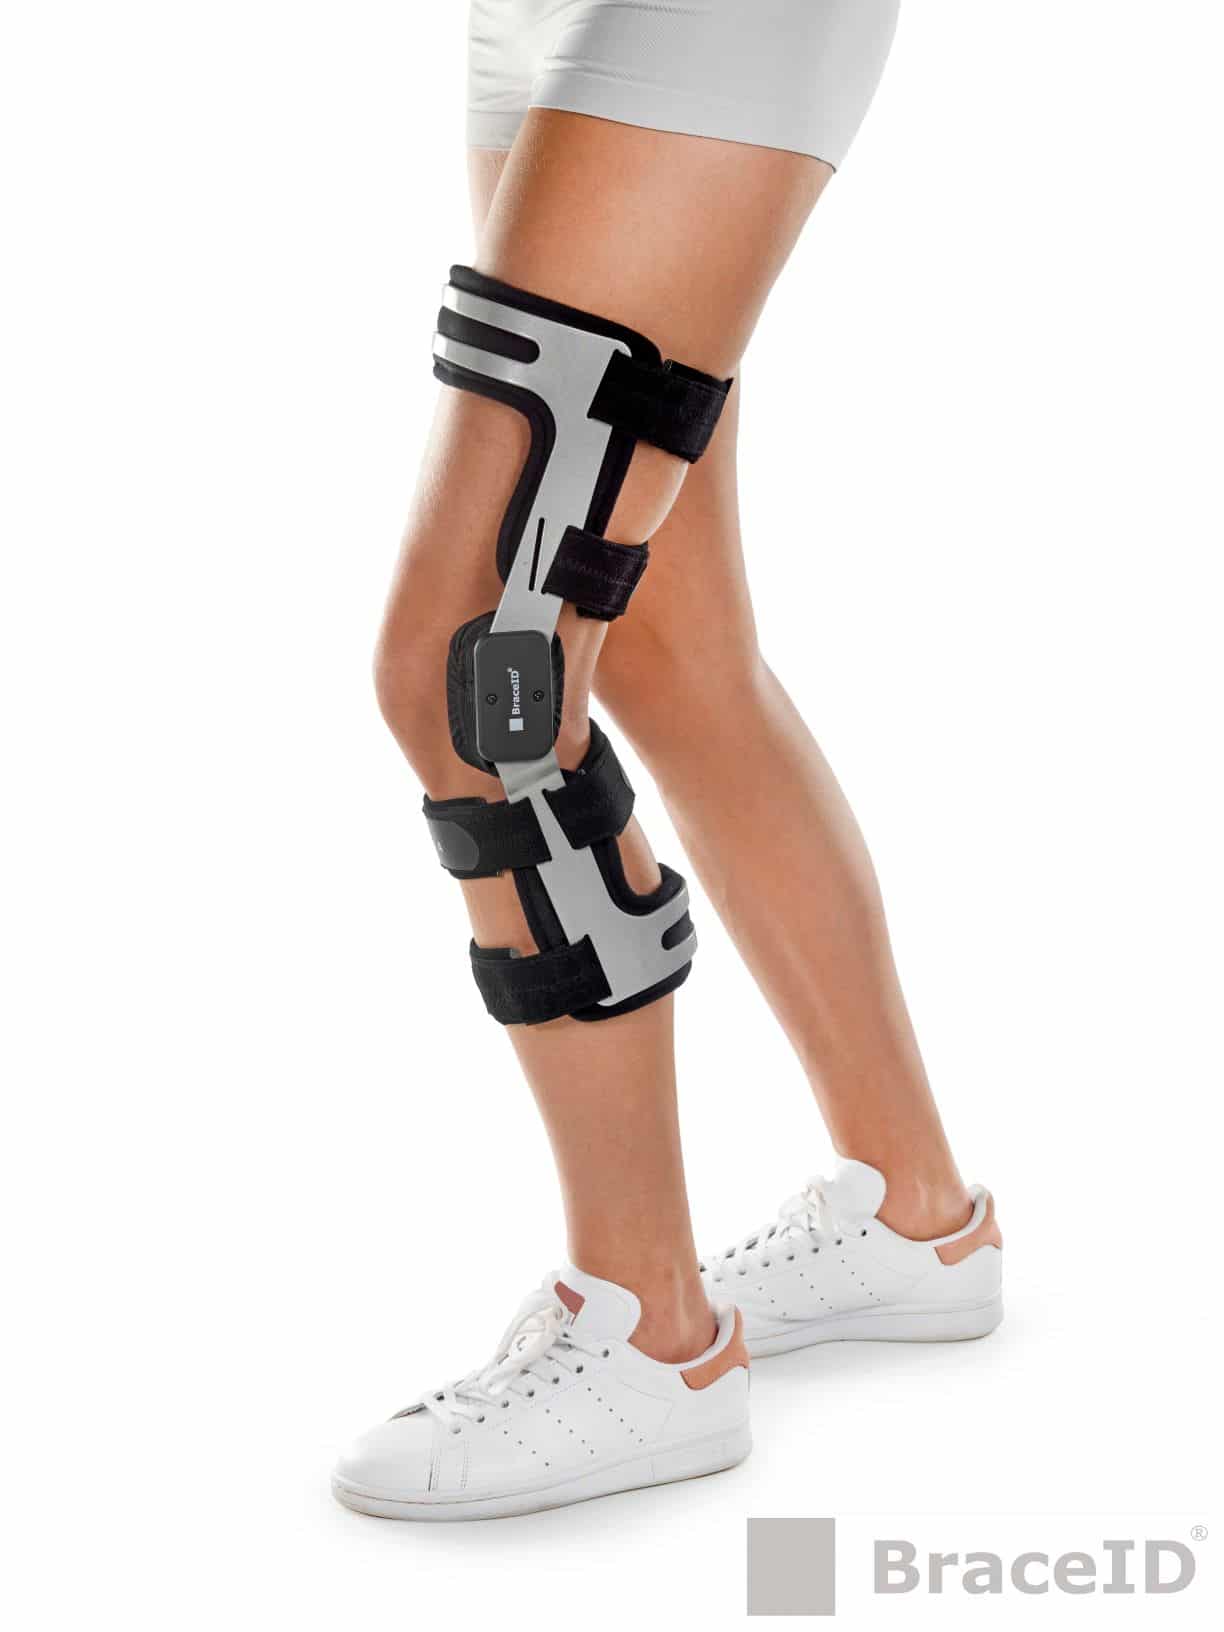 Functional Knee Braces